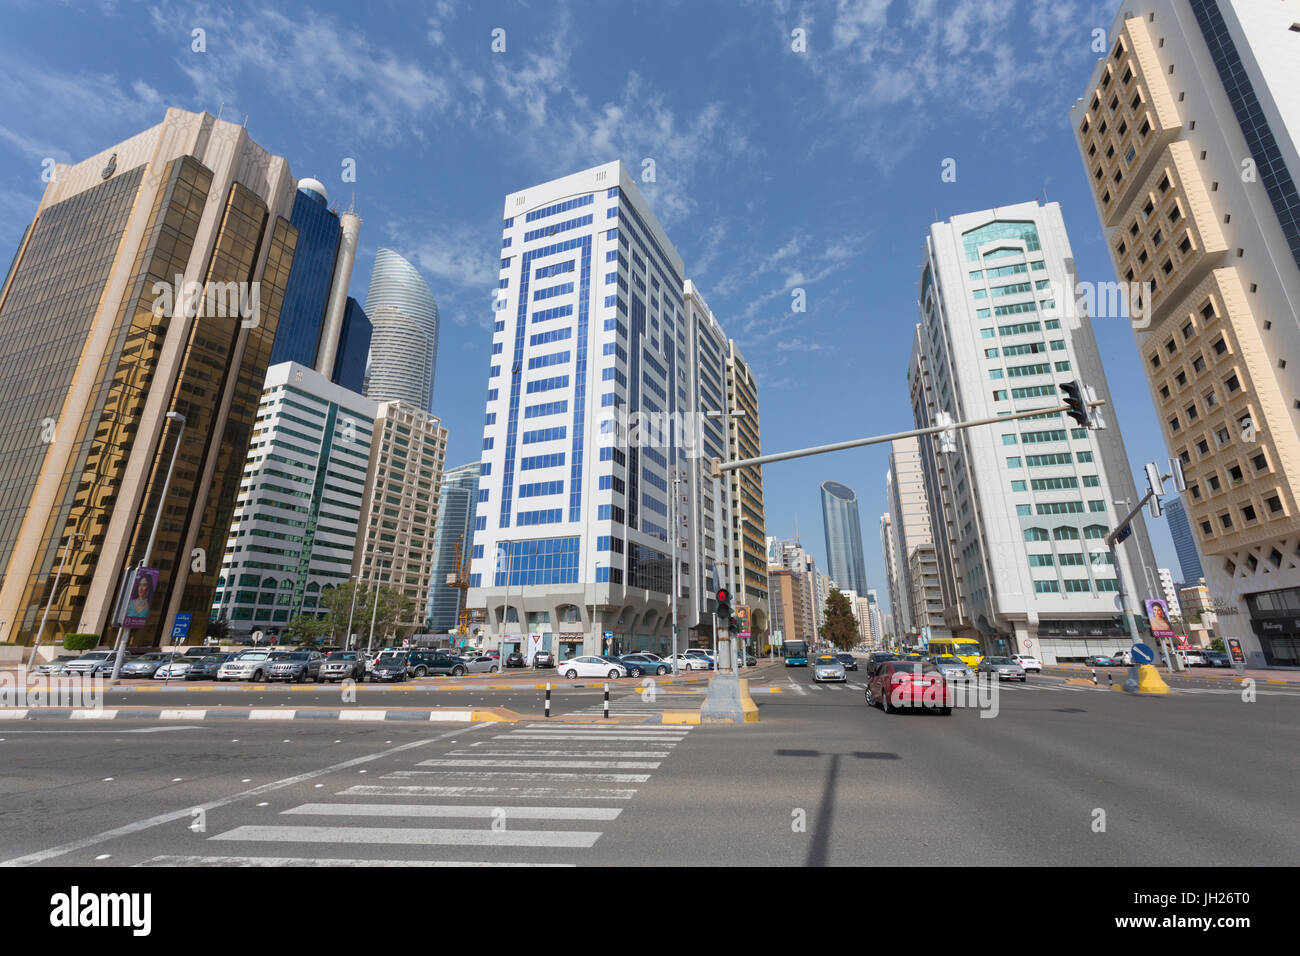 Carrefour et les immeubles de grande hauteur sur Hamdan Bin Mohammed Street, Abu Dhabi, Émirats arabes unis, Moyen Orient Banque D'Images